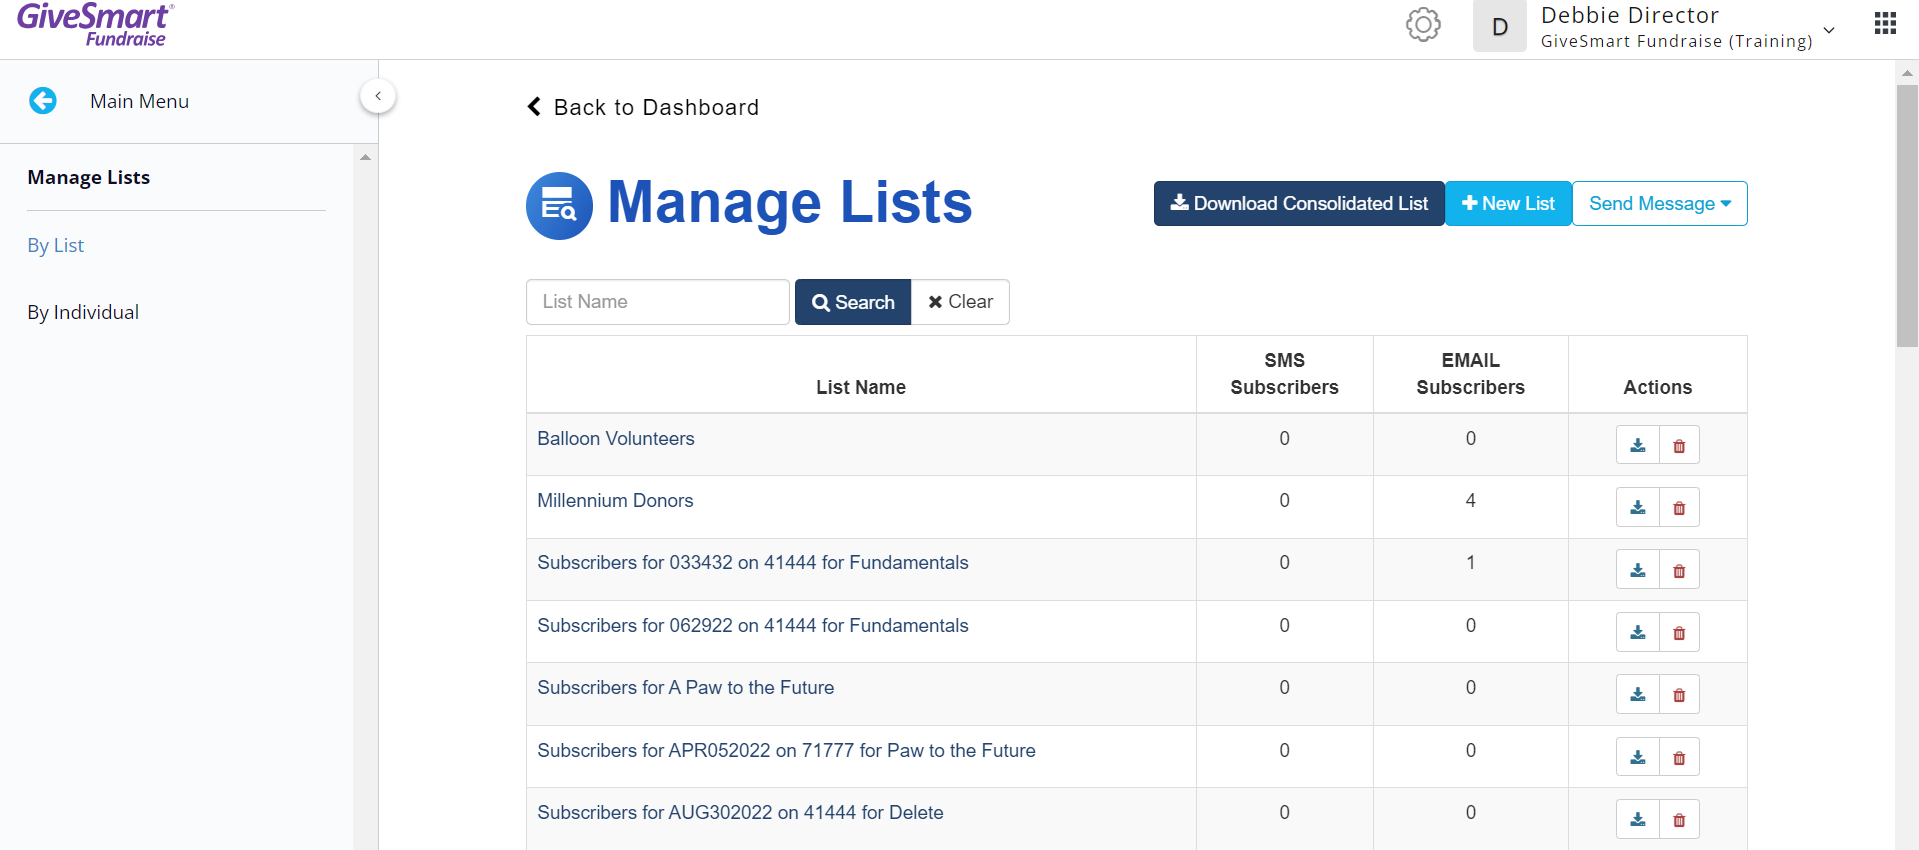 Manage Lists - Lists